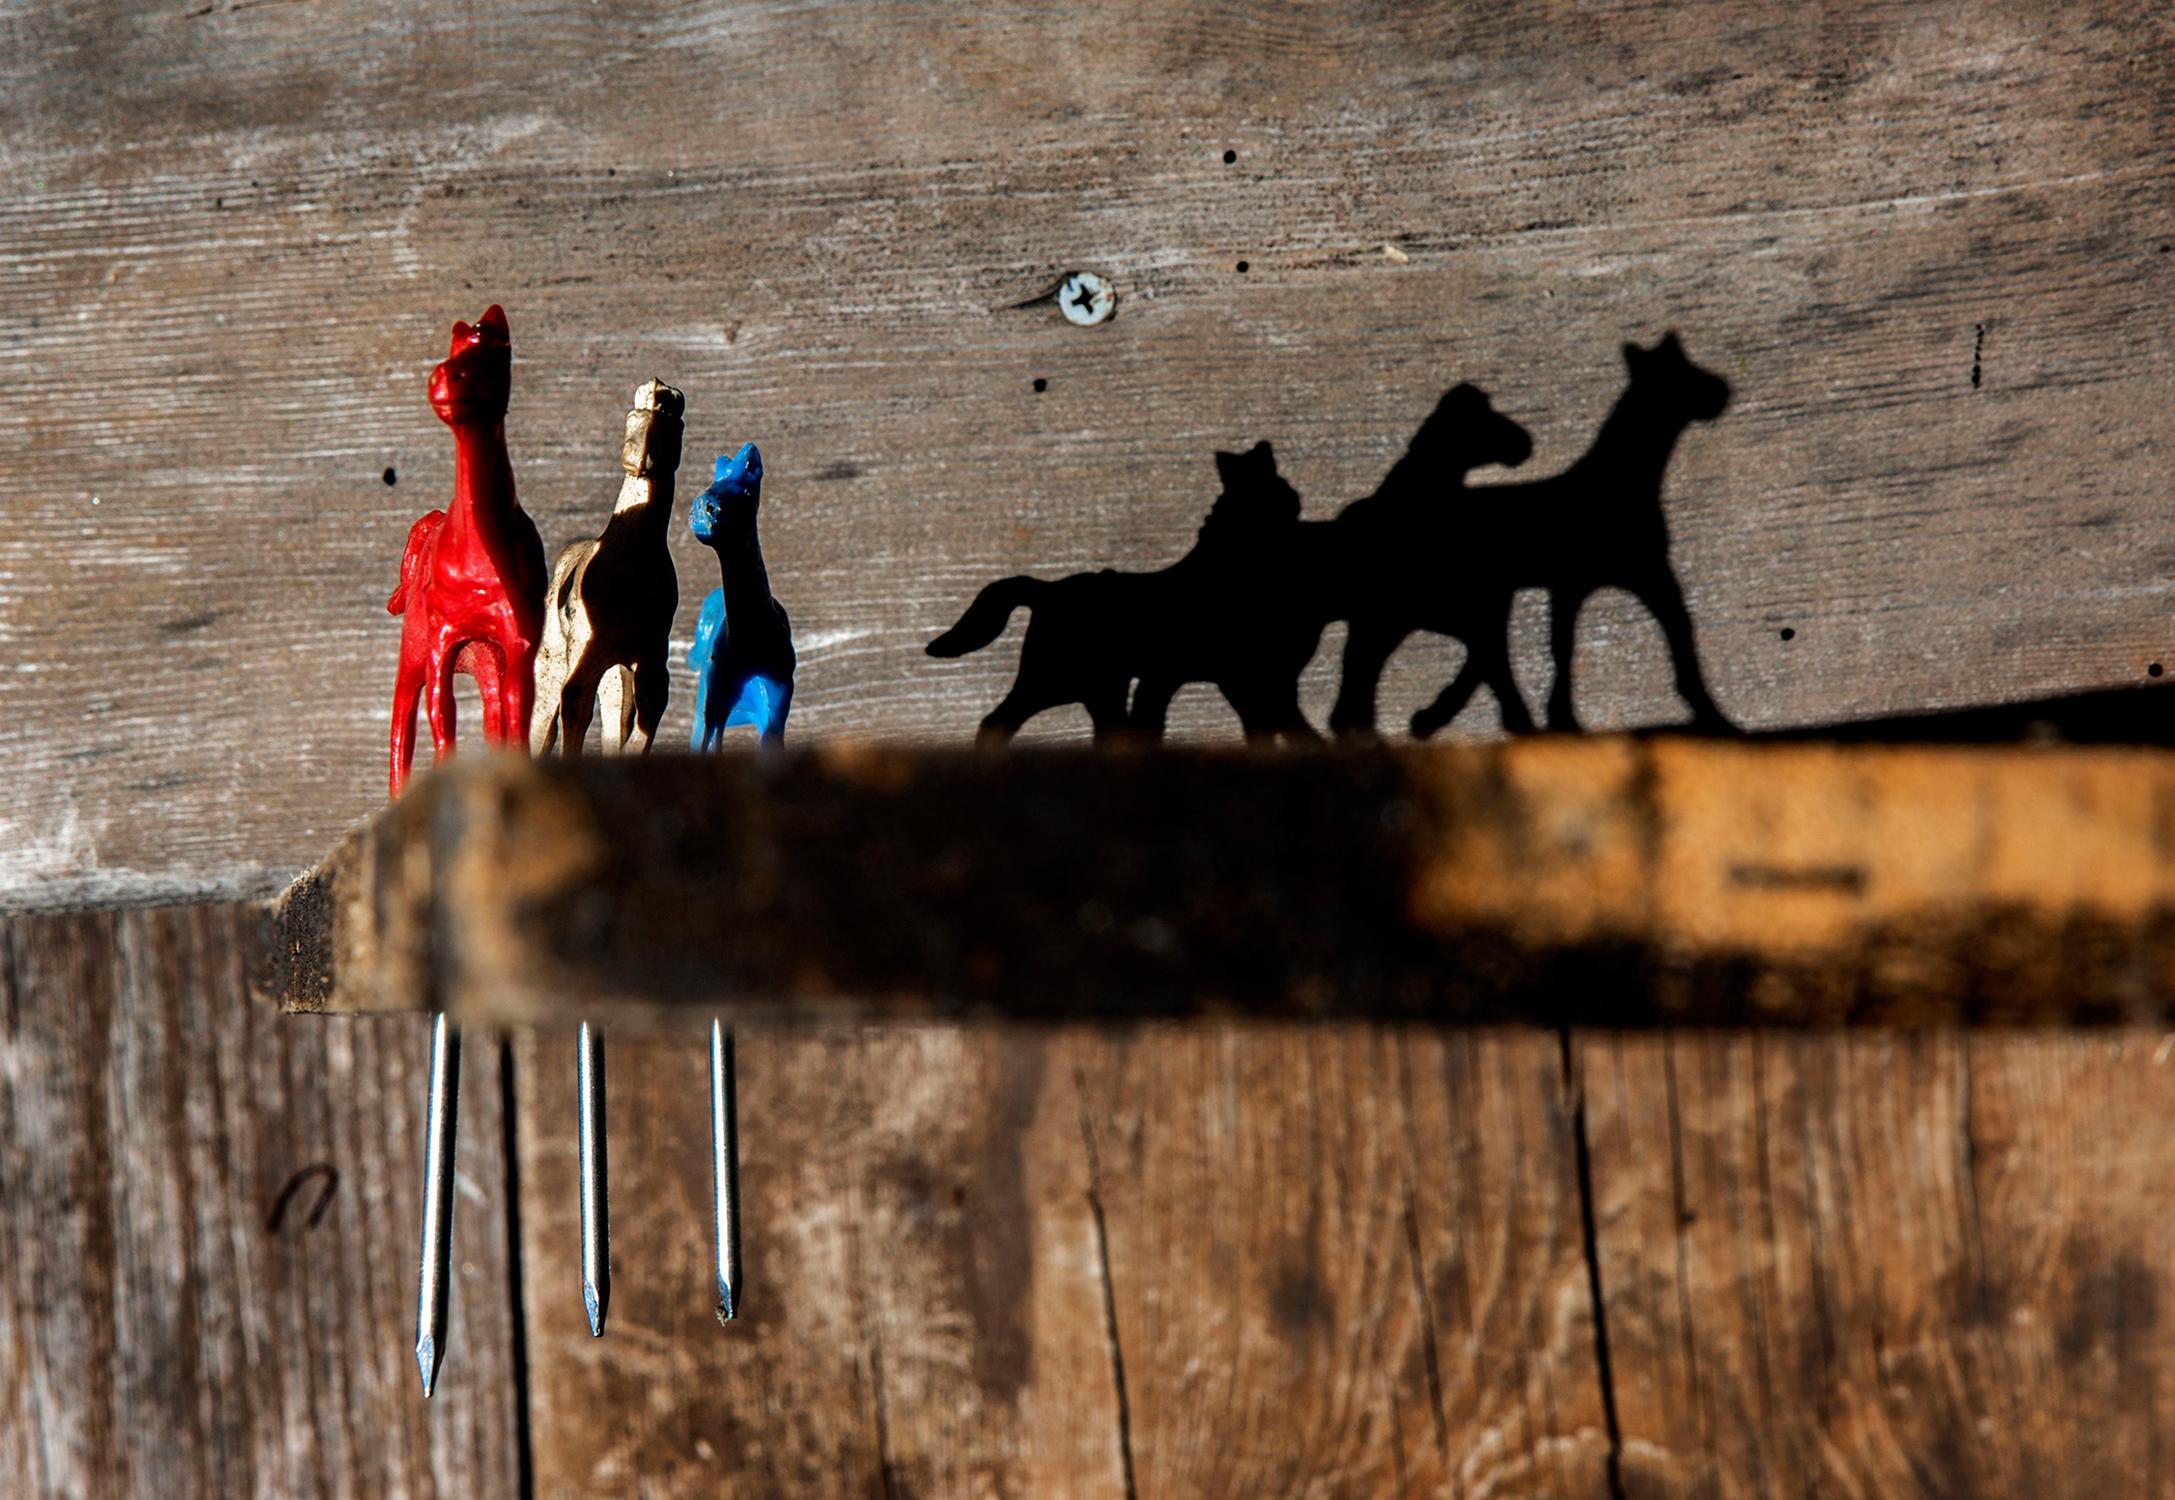 Still-Life Photograph Shannon Davis - "Freedom" - Sud, chevaux, photographie mise en scène, ombre, nature morte